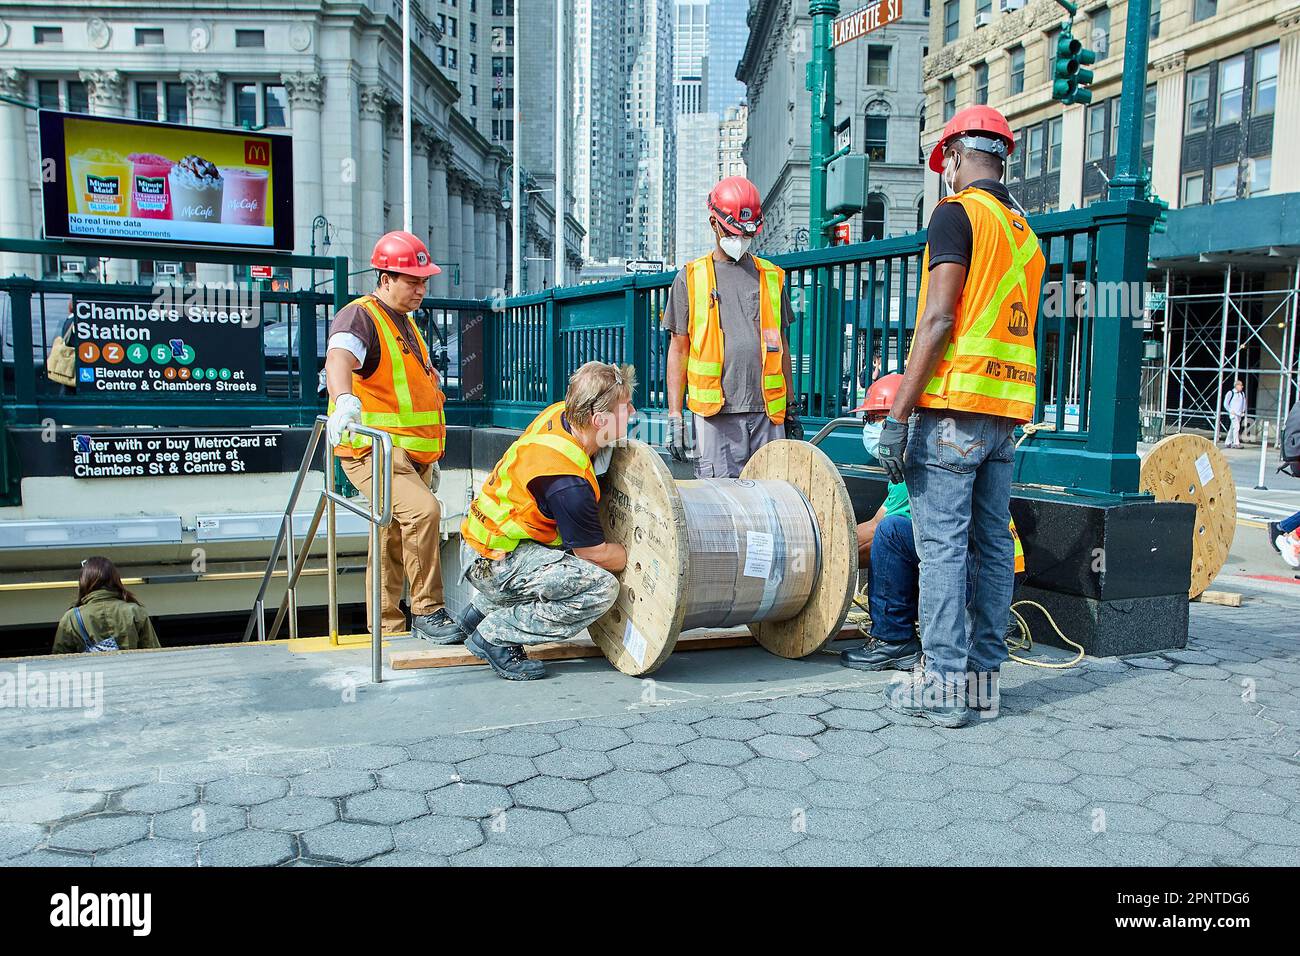 New York, NY USA - 06 21 2022: Construction Workers near Subway Entrance Stock Photo